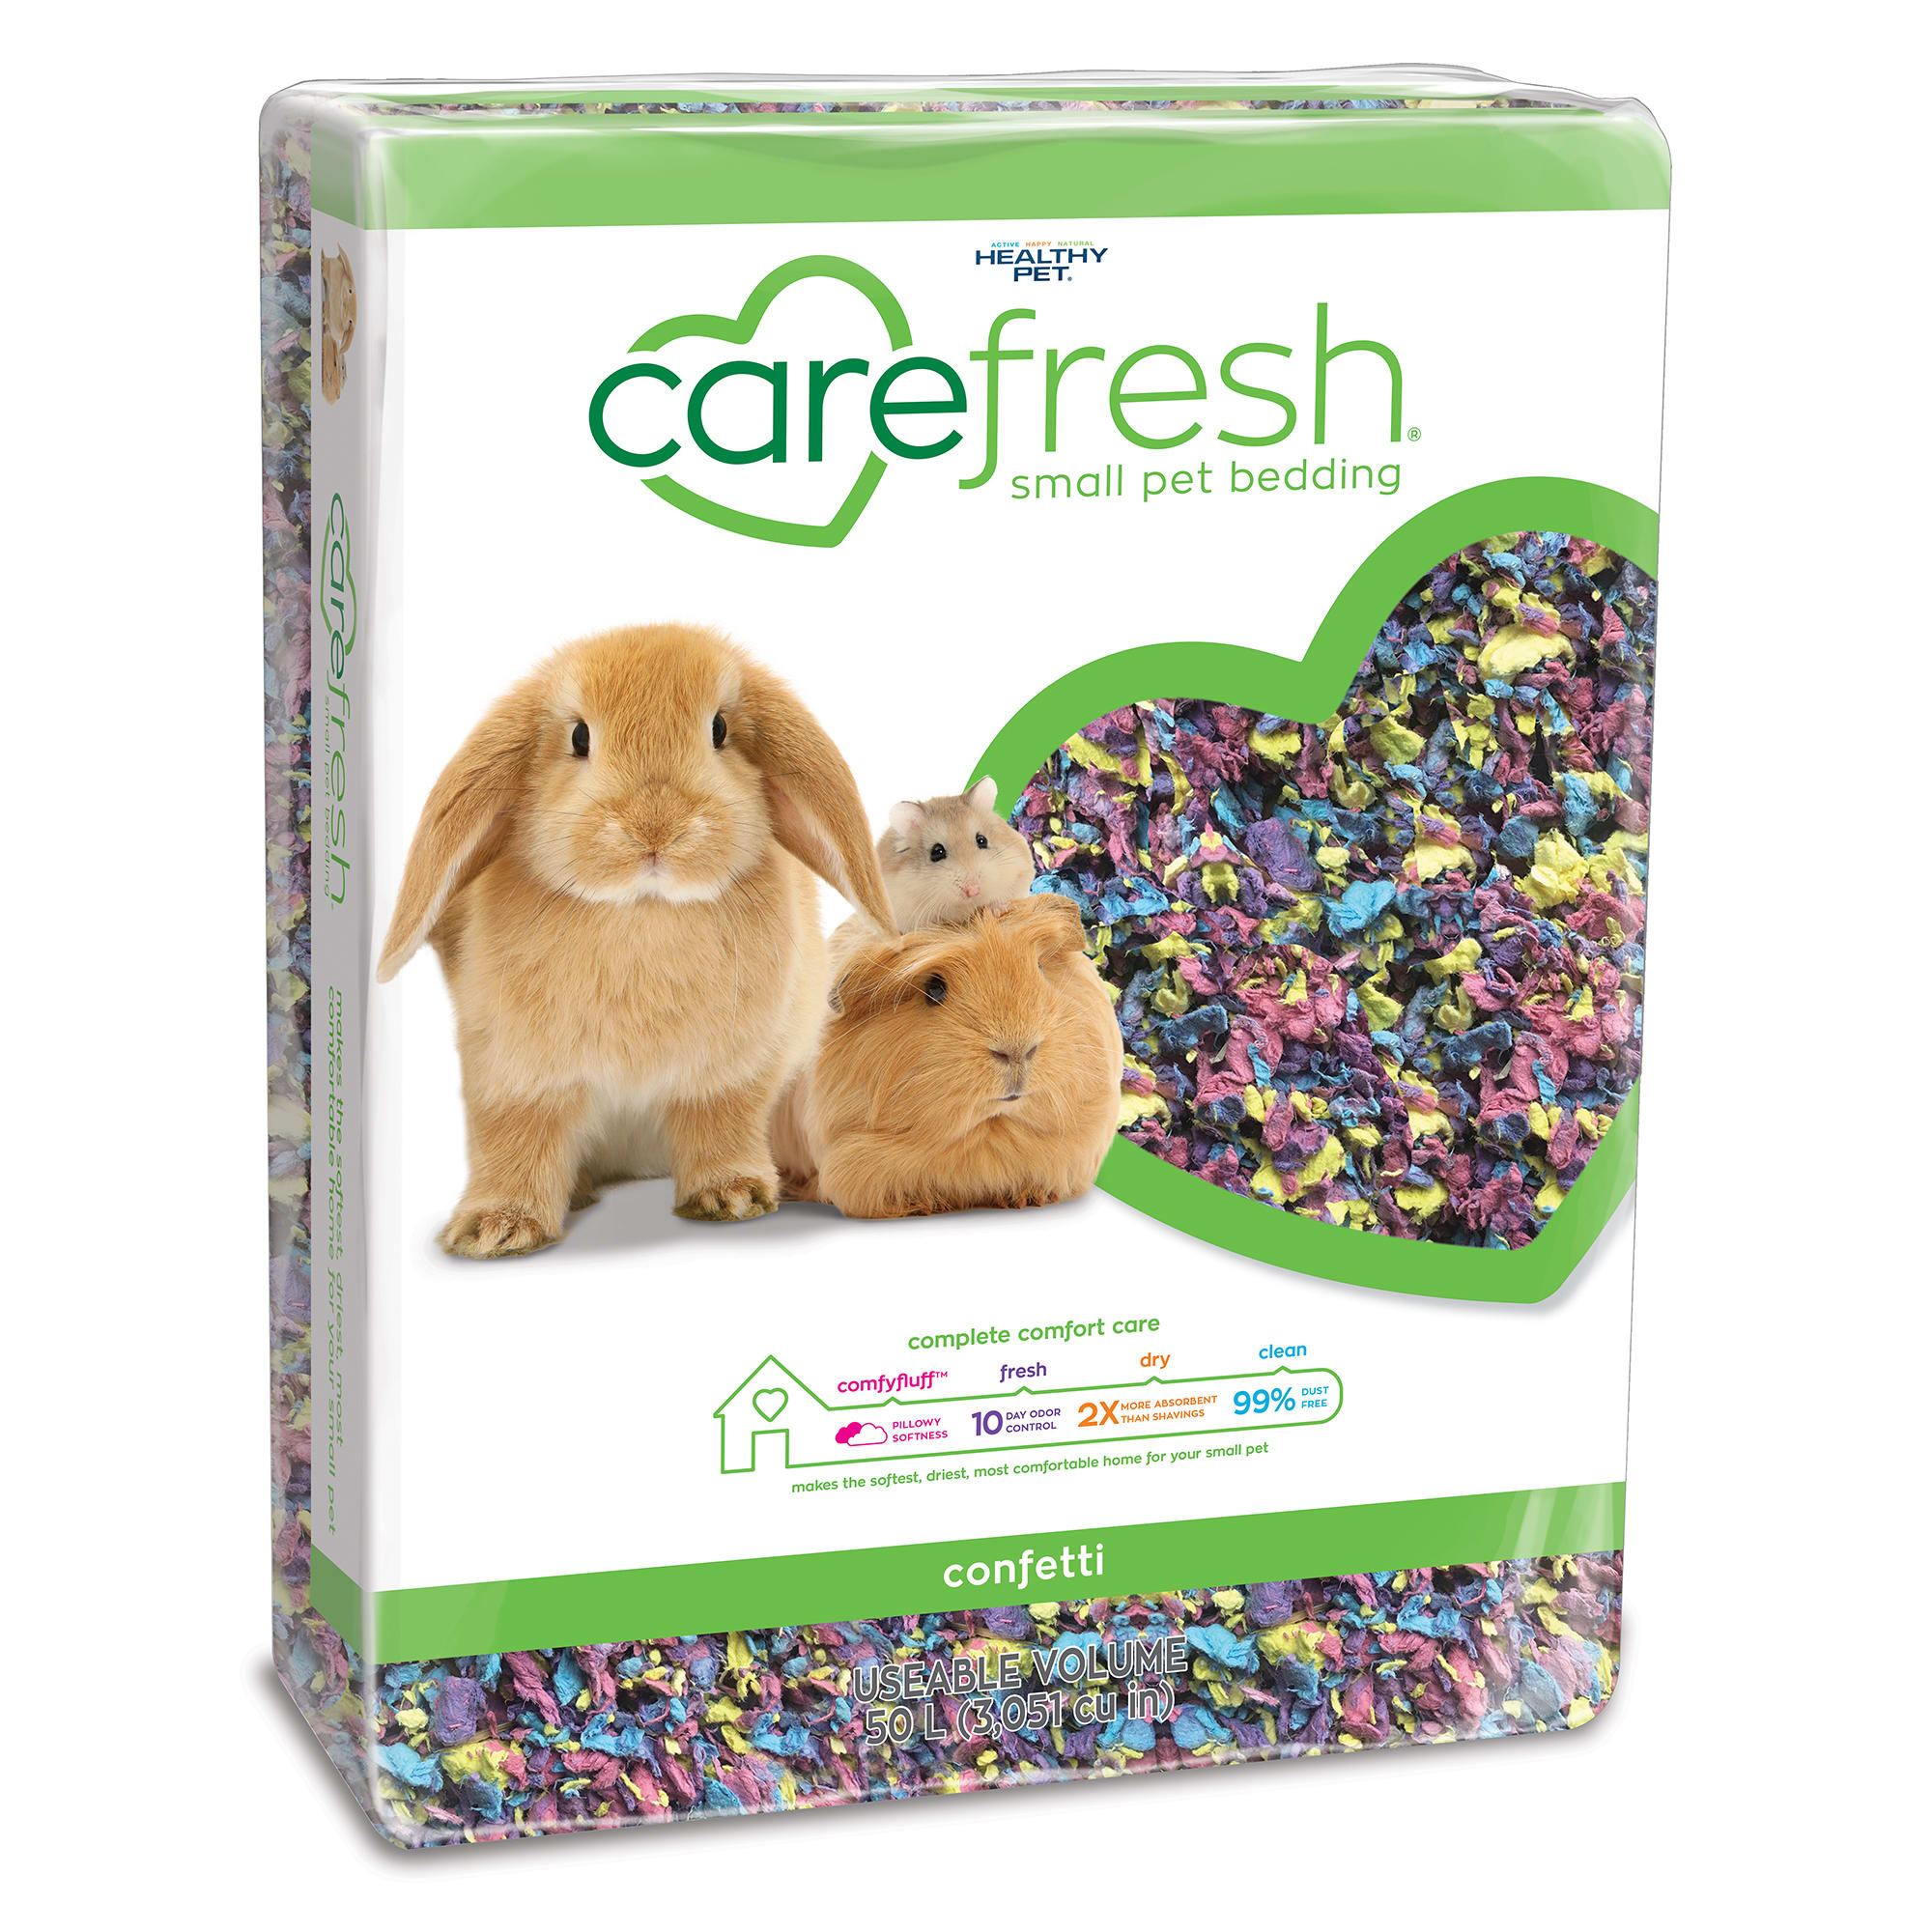 carefresh-confetti-small-pet-bedding-50-liter-petco